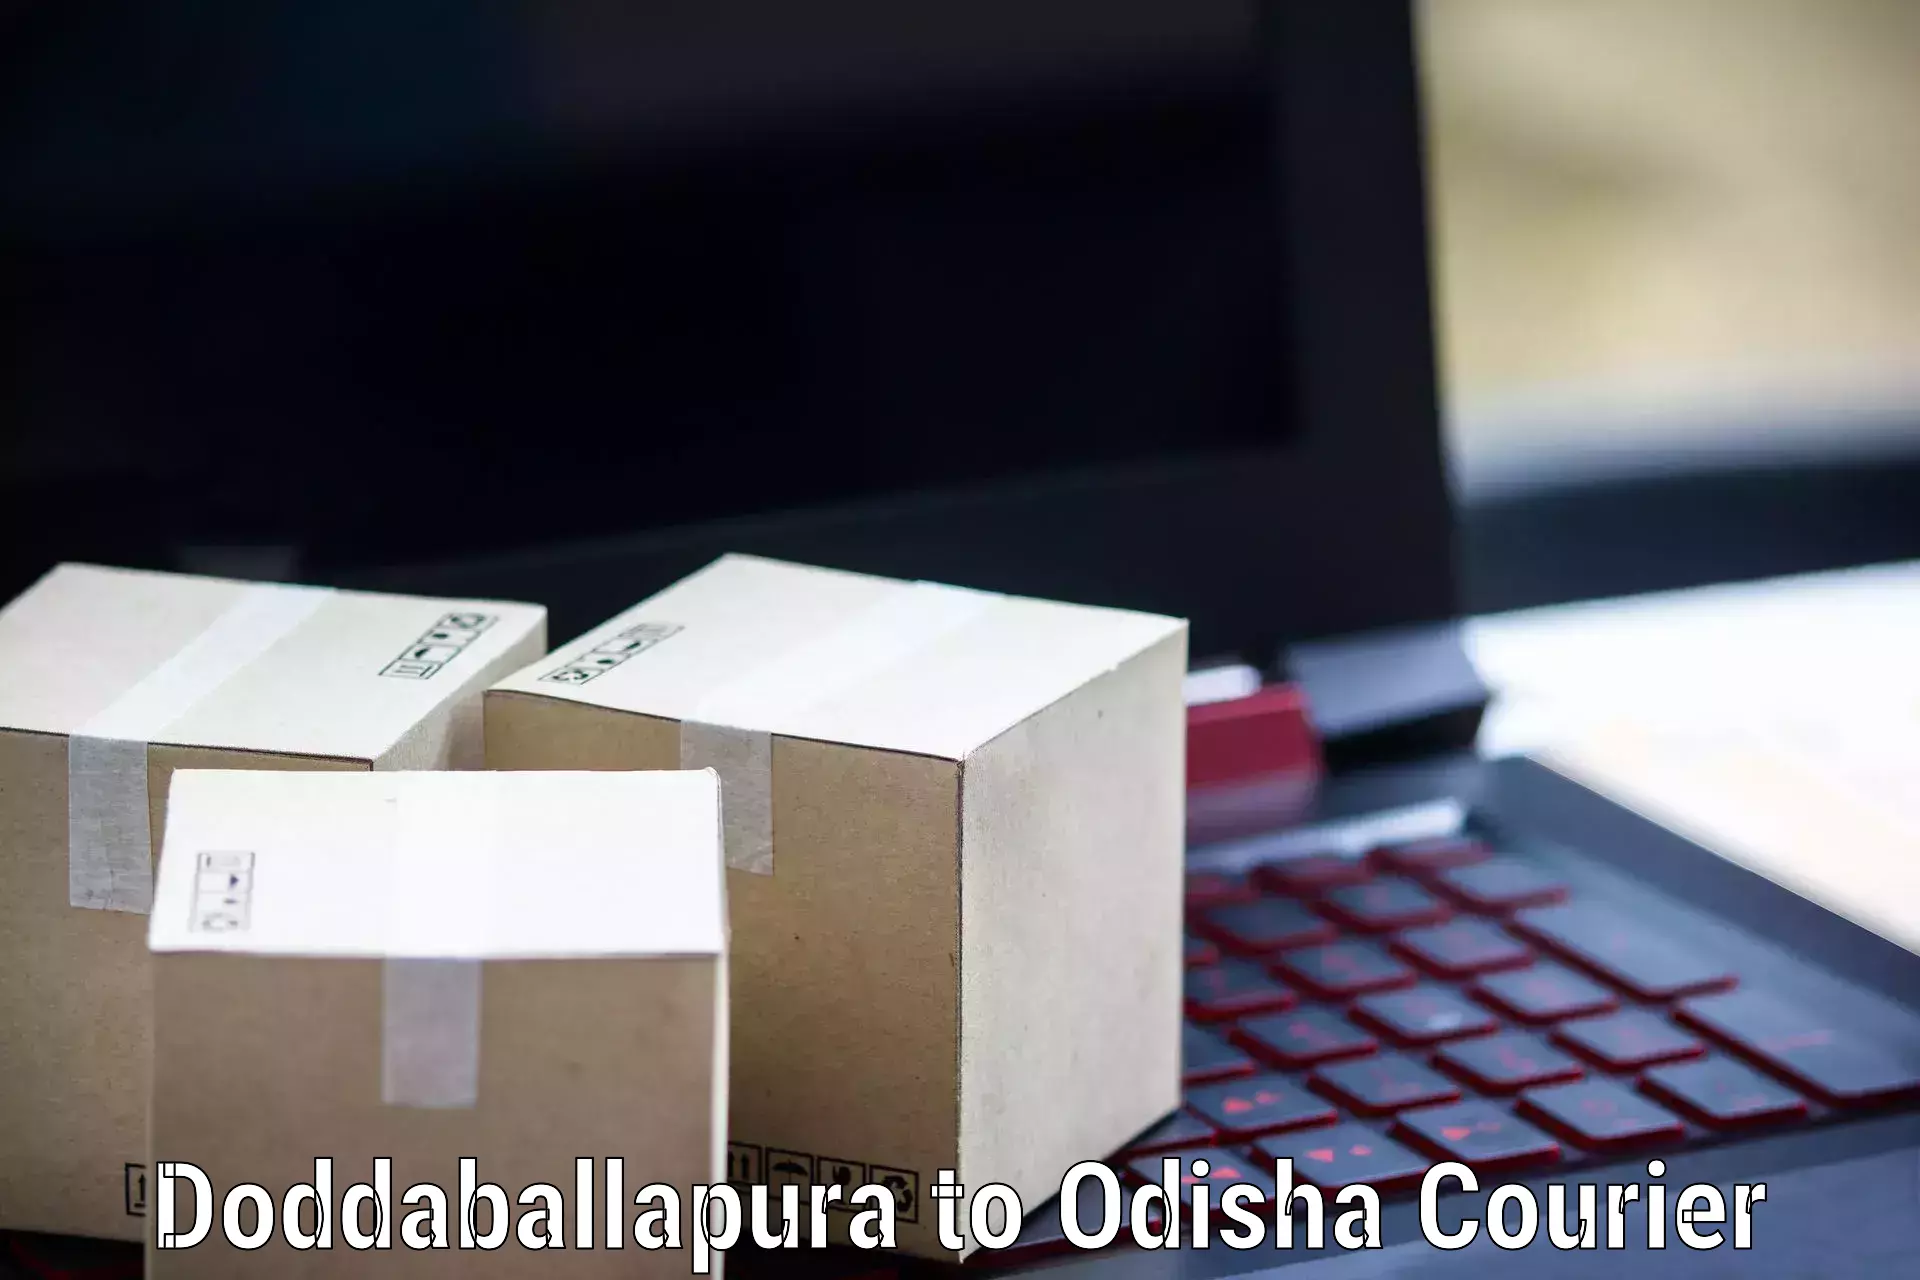 Logistics service provider Doddaballapura to Karanjia